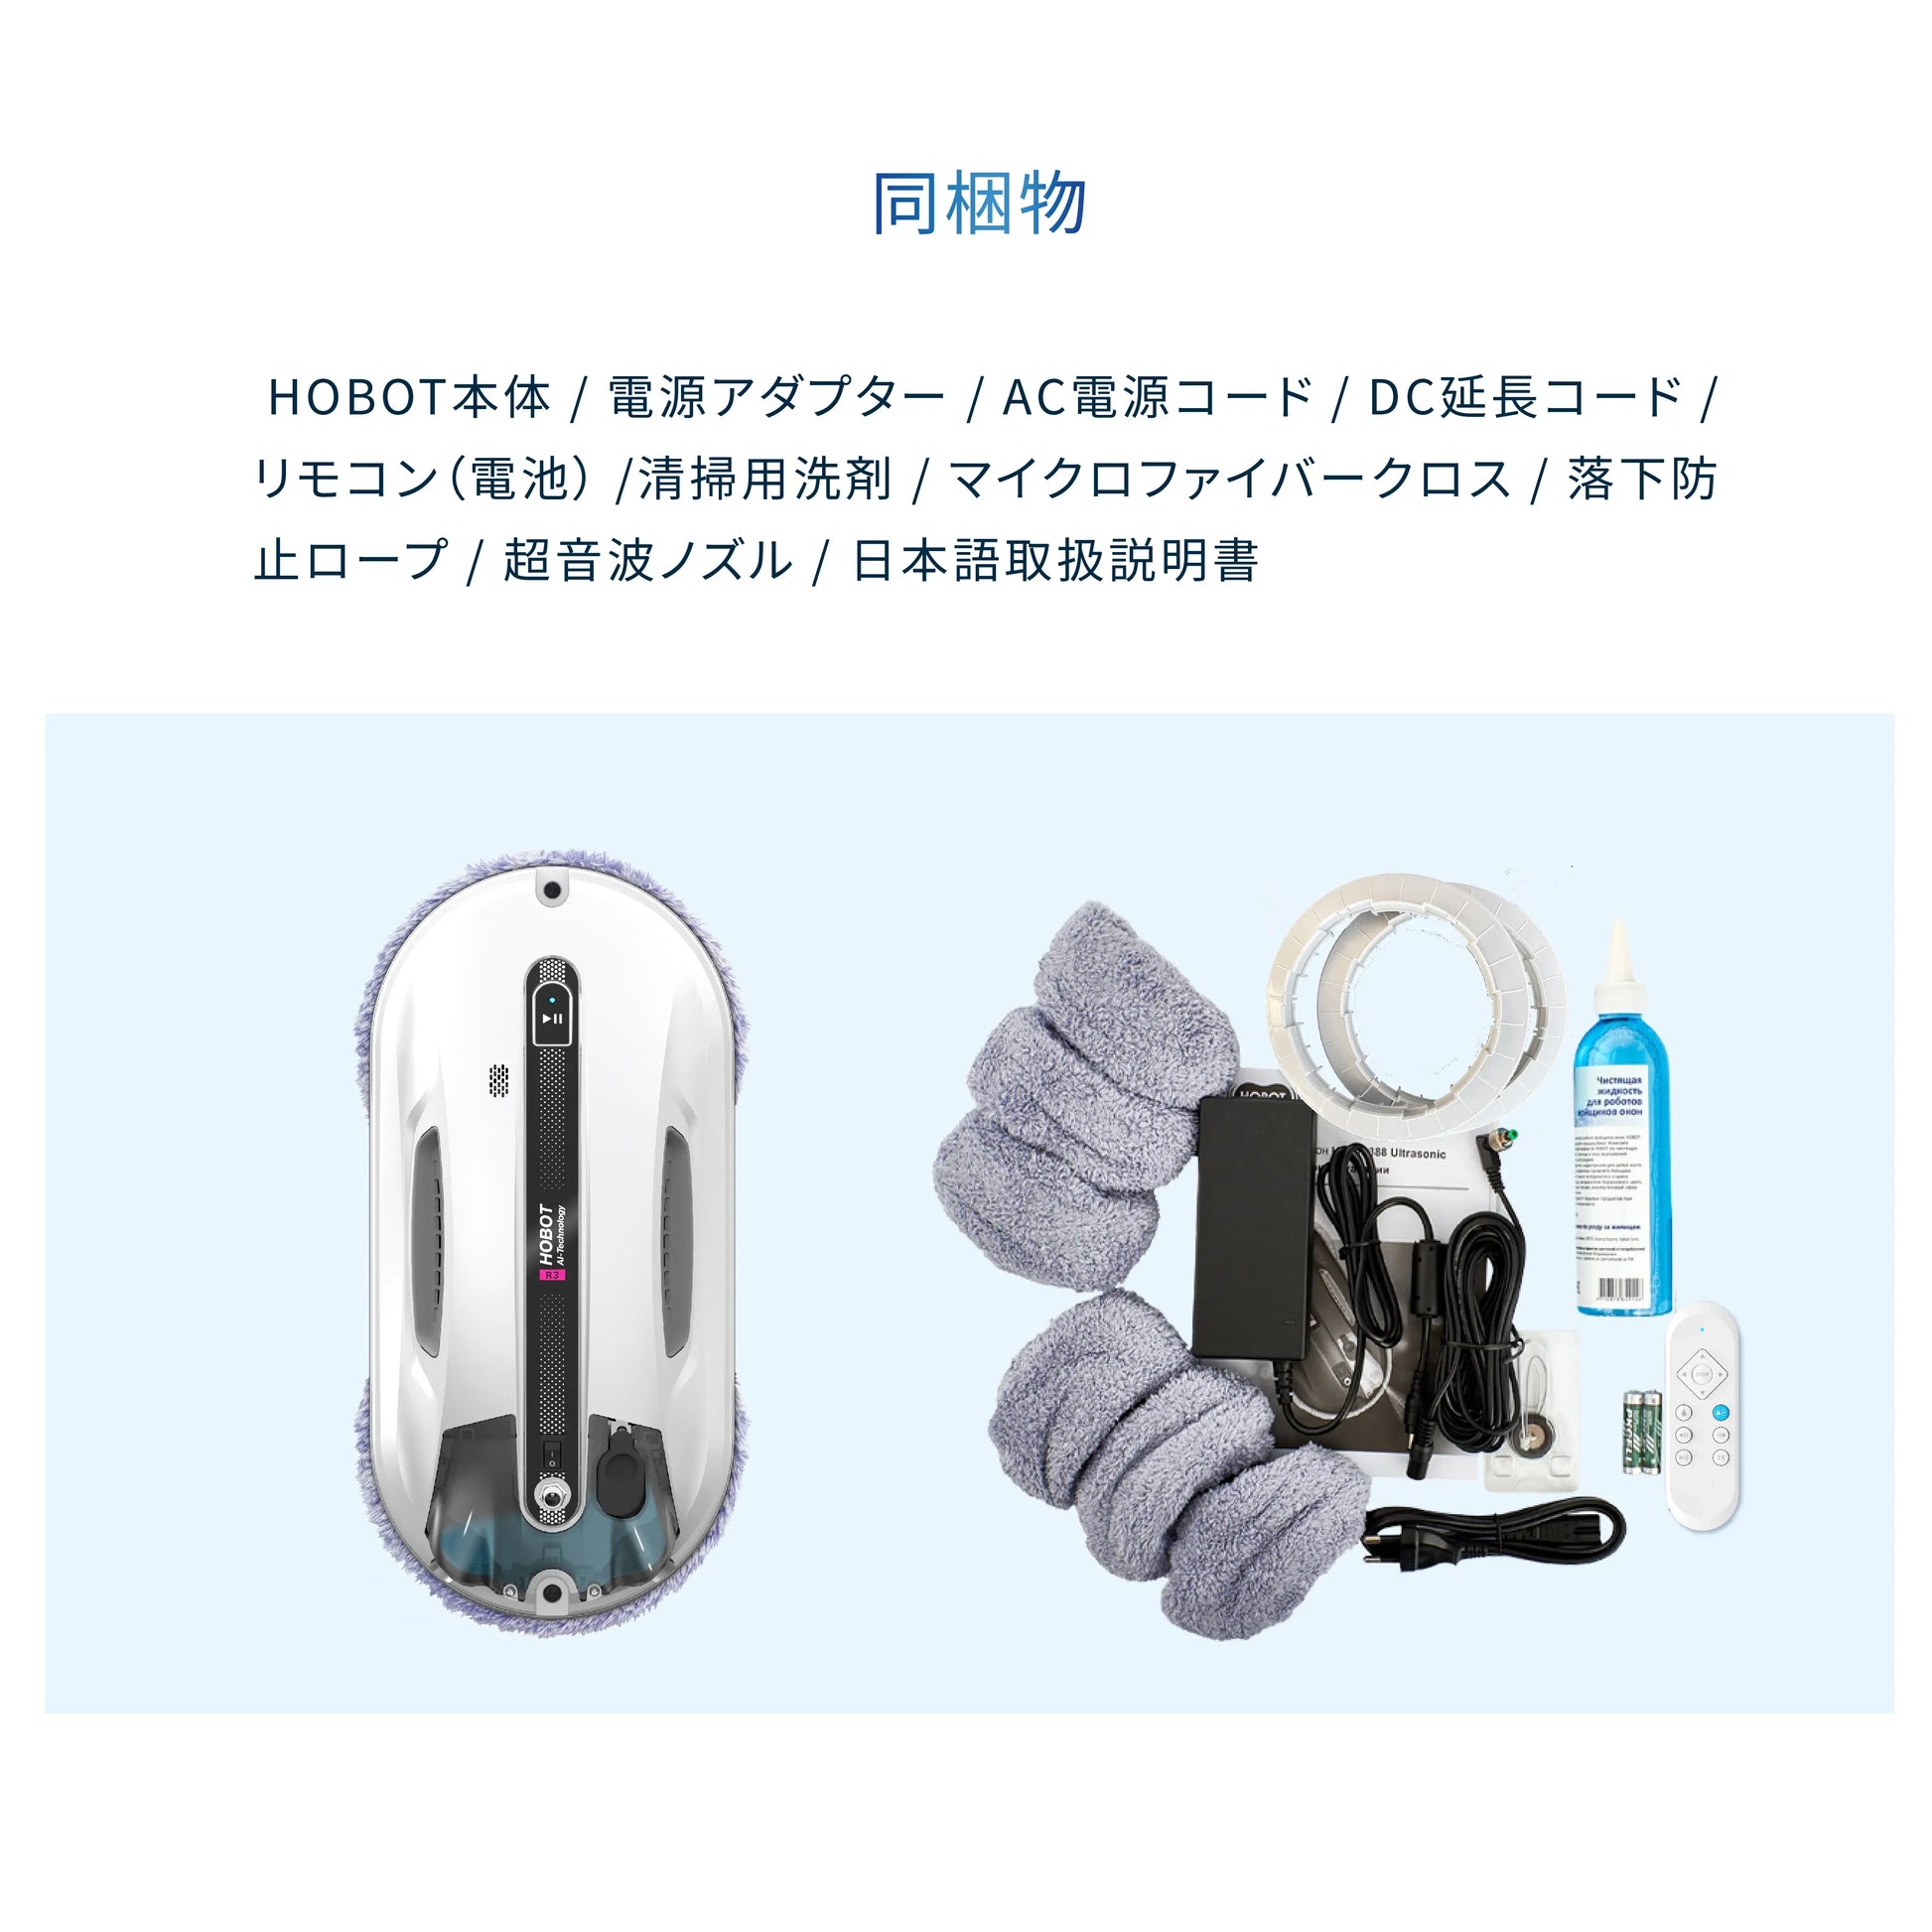 窓掃除ロボットHOBOT-R3の画像（ホボット）